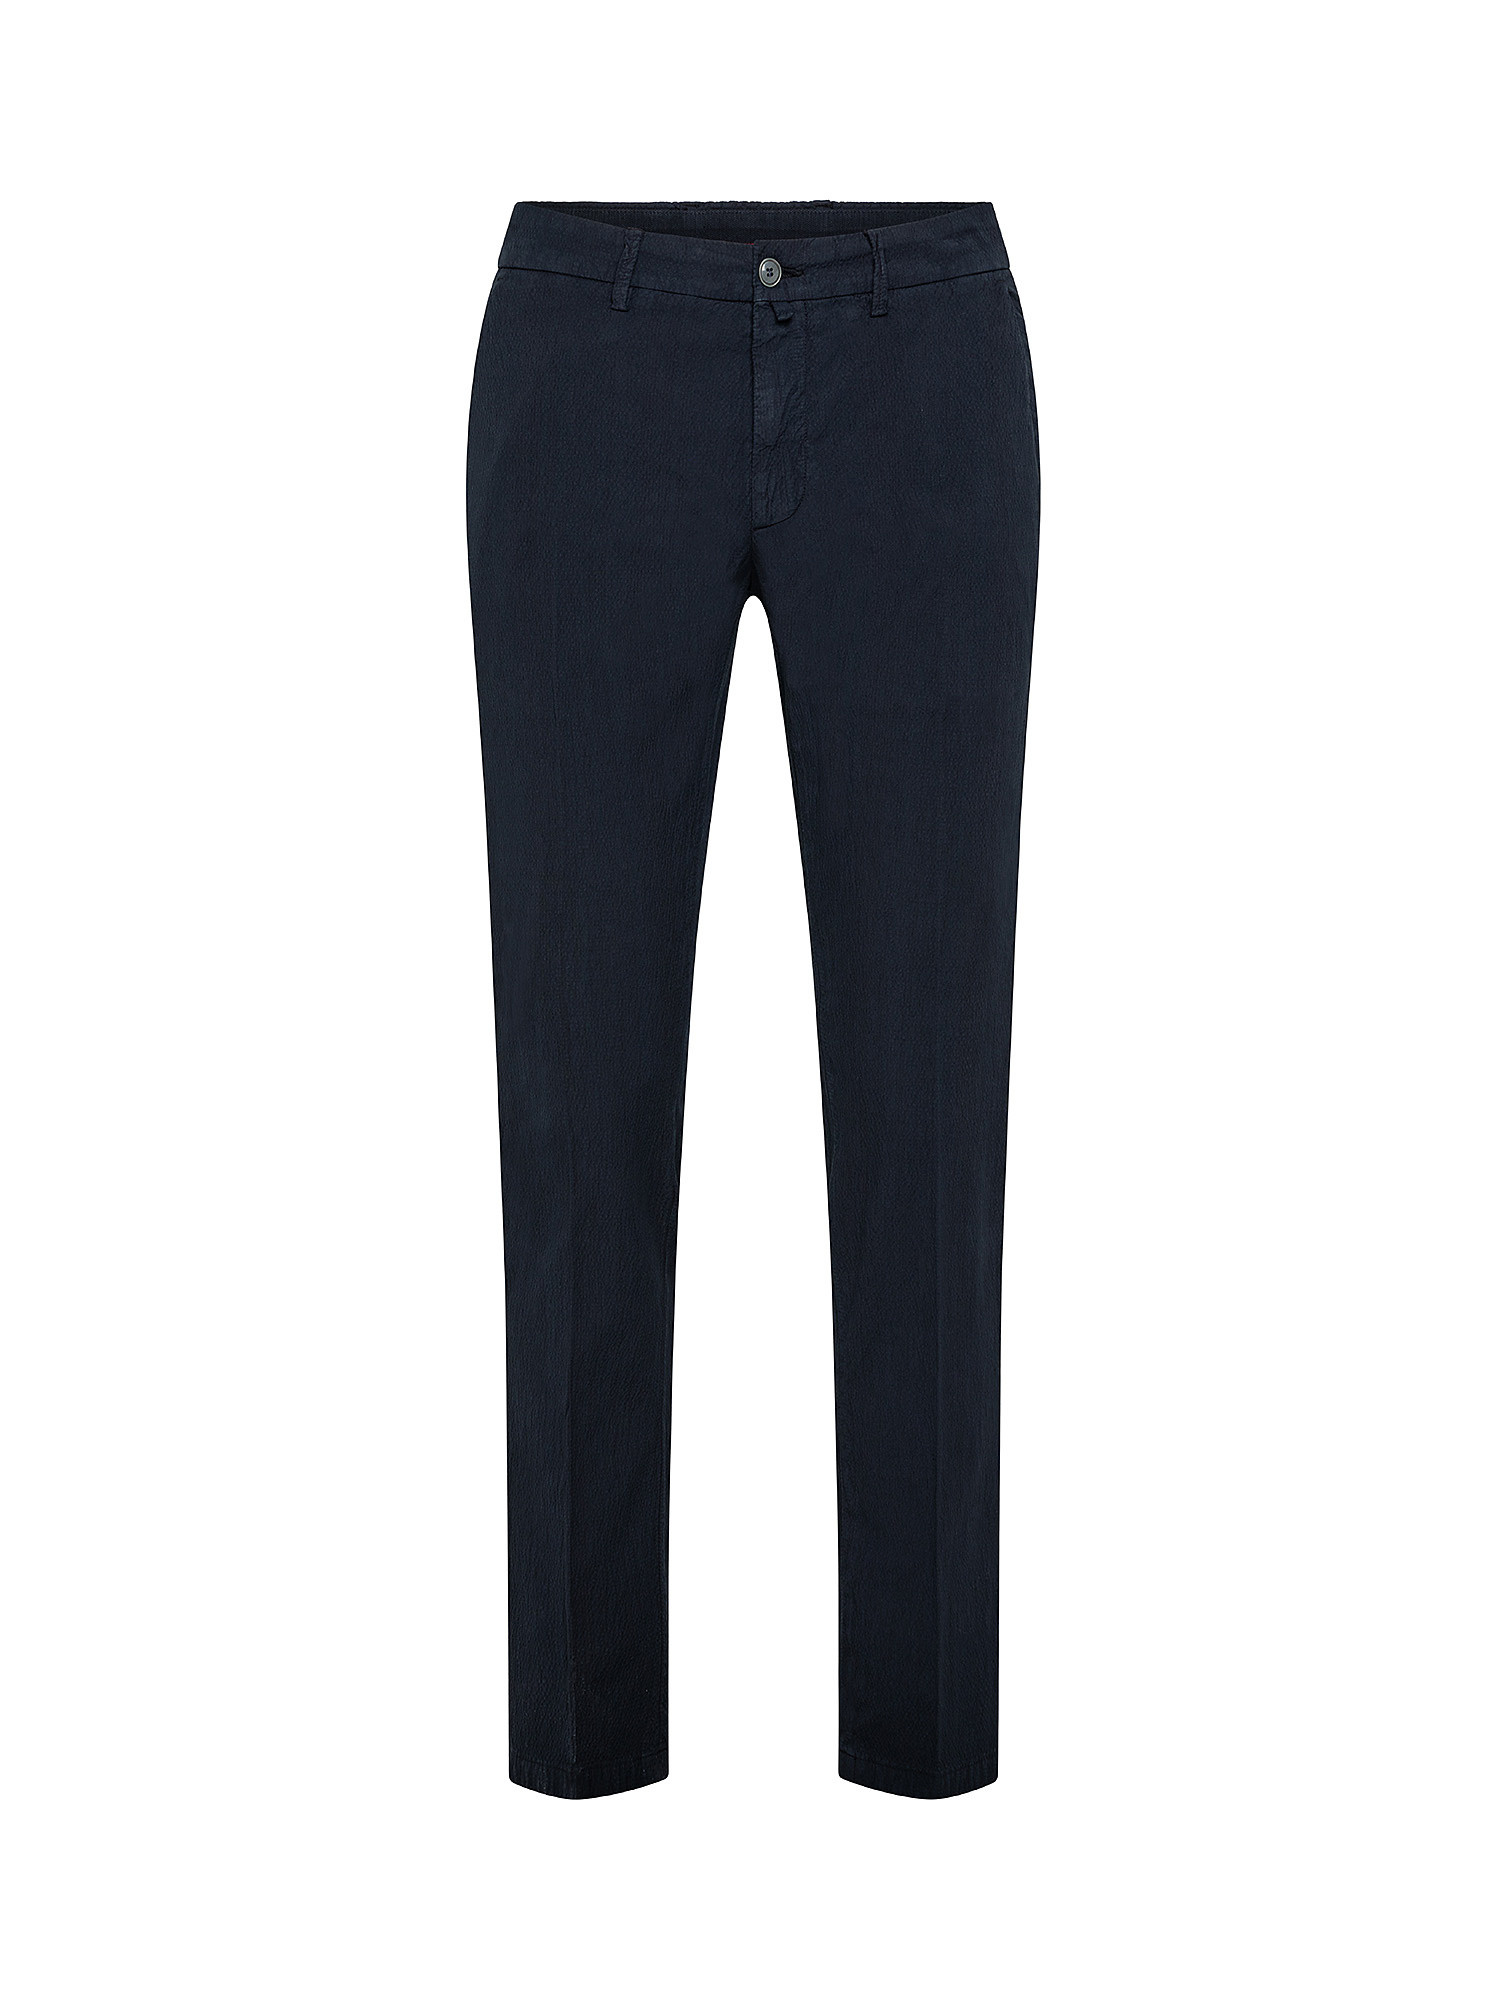 Pantalone chino, Blu, large image number 0